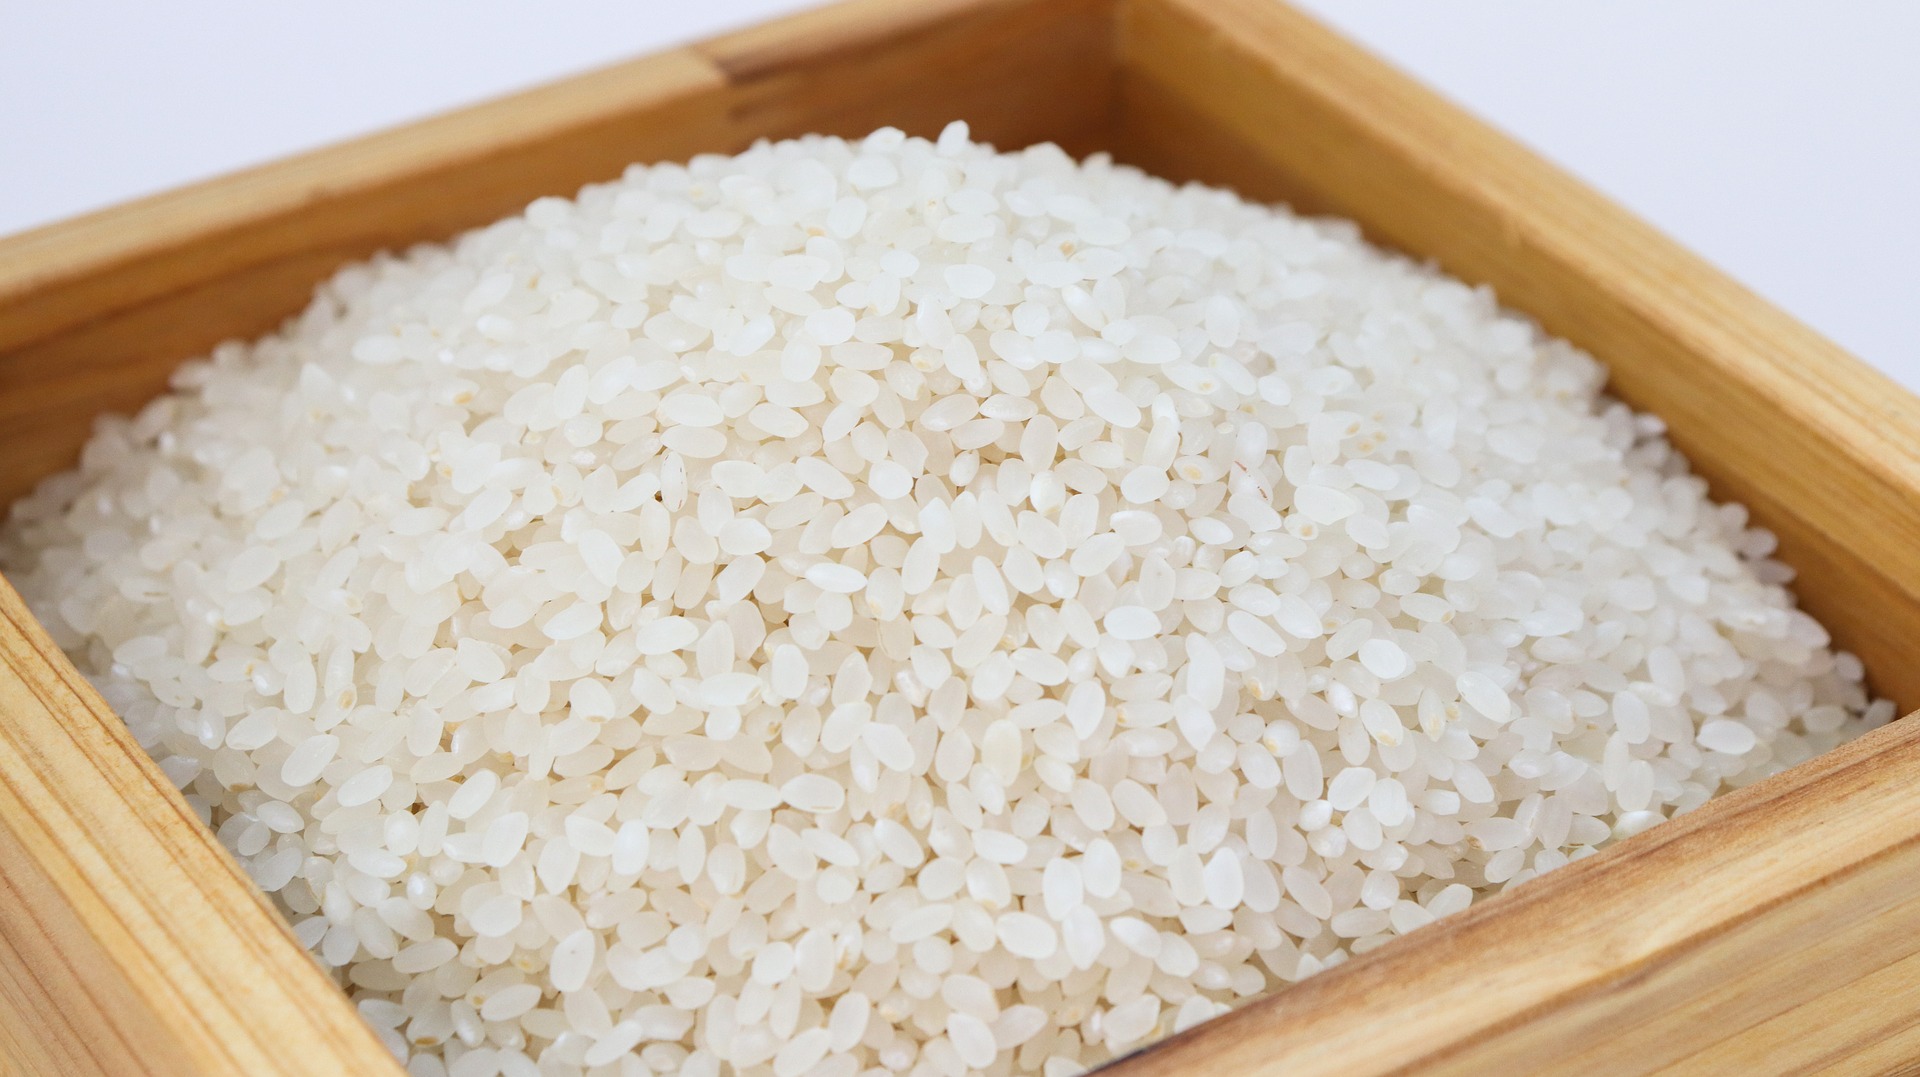 TRIK za pripravo POPOLNEGA riža: Poskusil sem in od takrat nisem kuhal več kuhanega riža, to je nekaj fantastičnega!